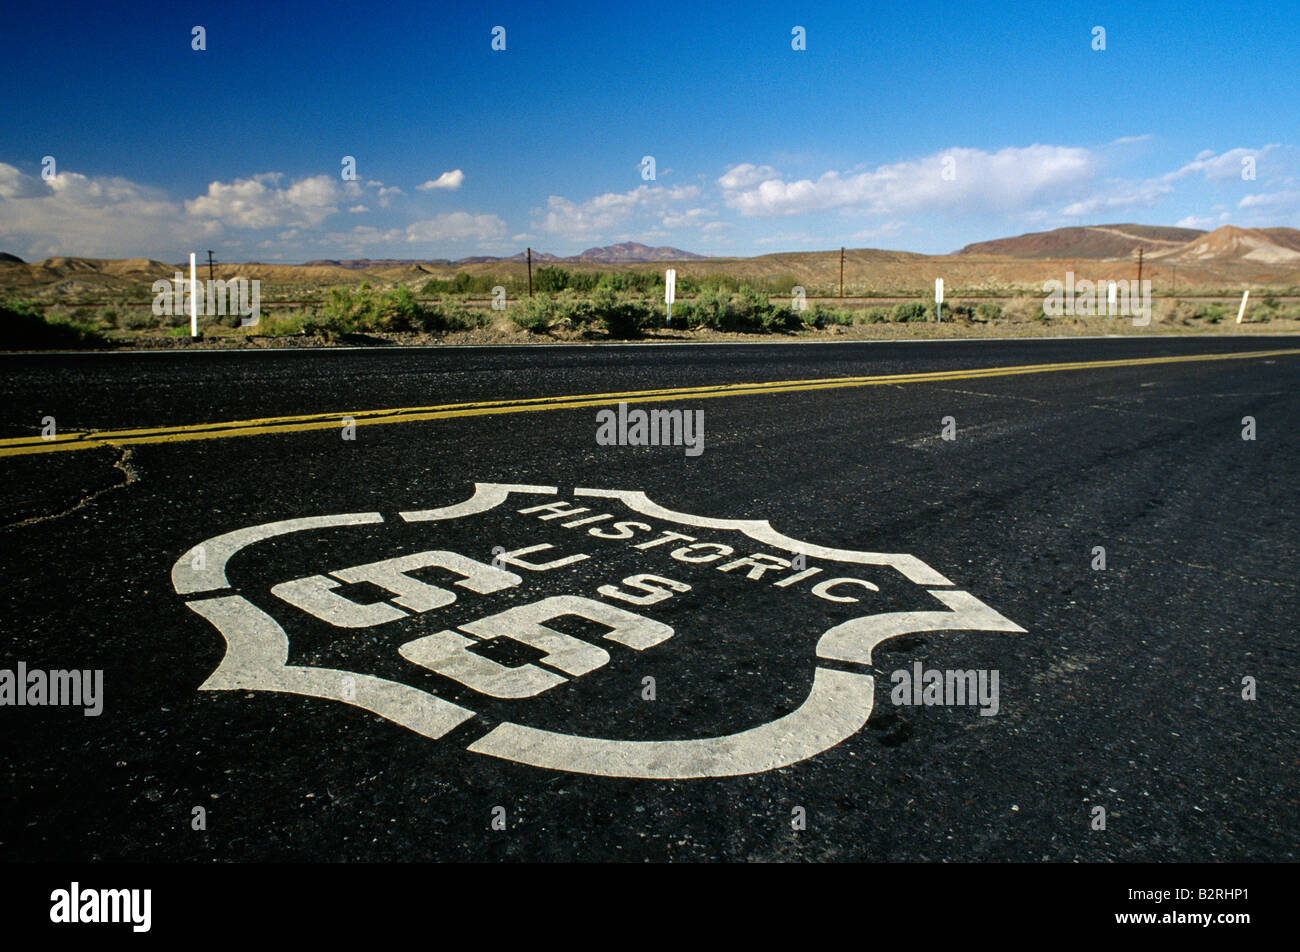 Melden Sie auf der alten Autobahn Route 66 Barstow Kalifornien USA Stockfoto